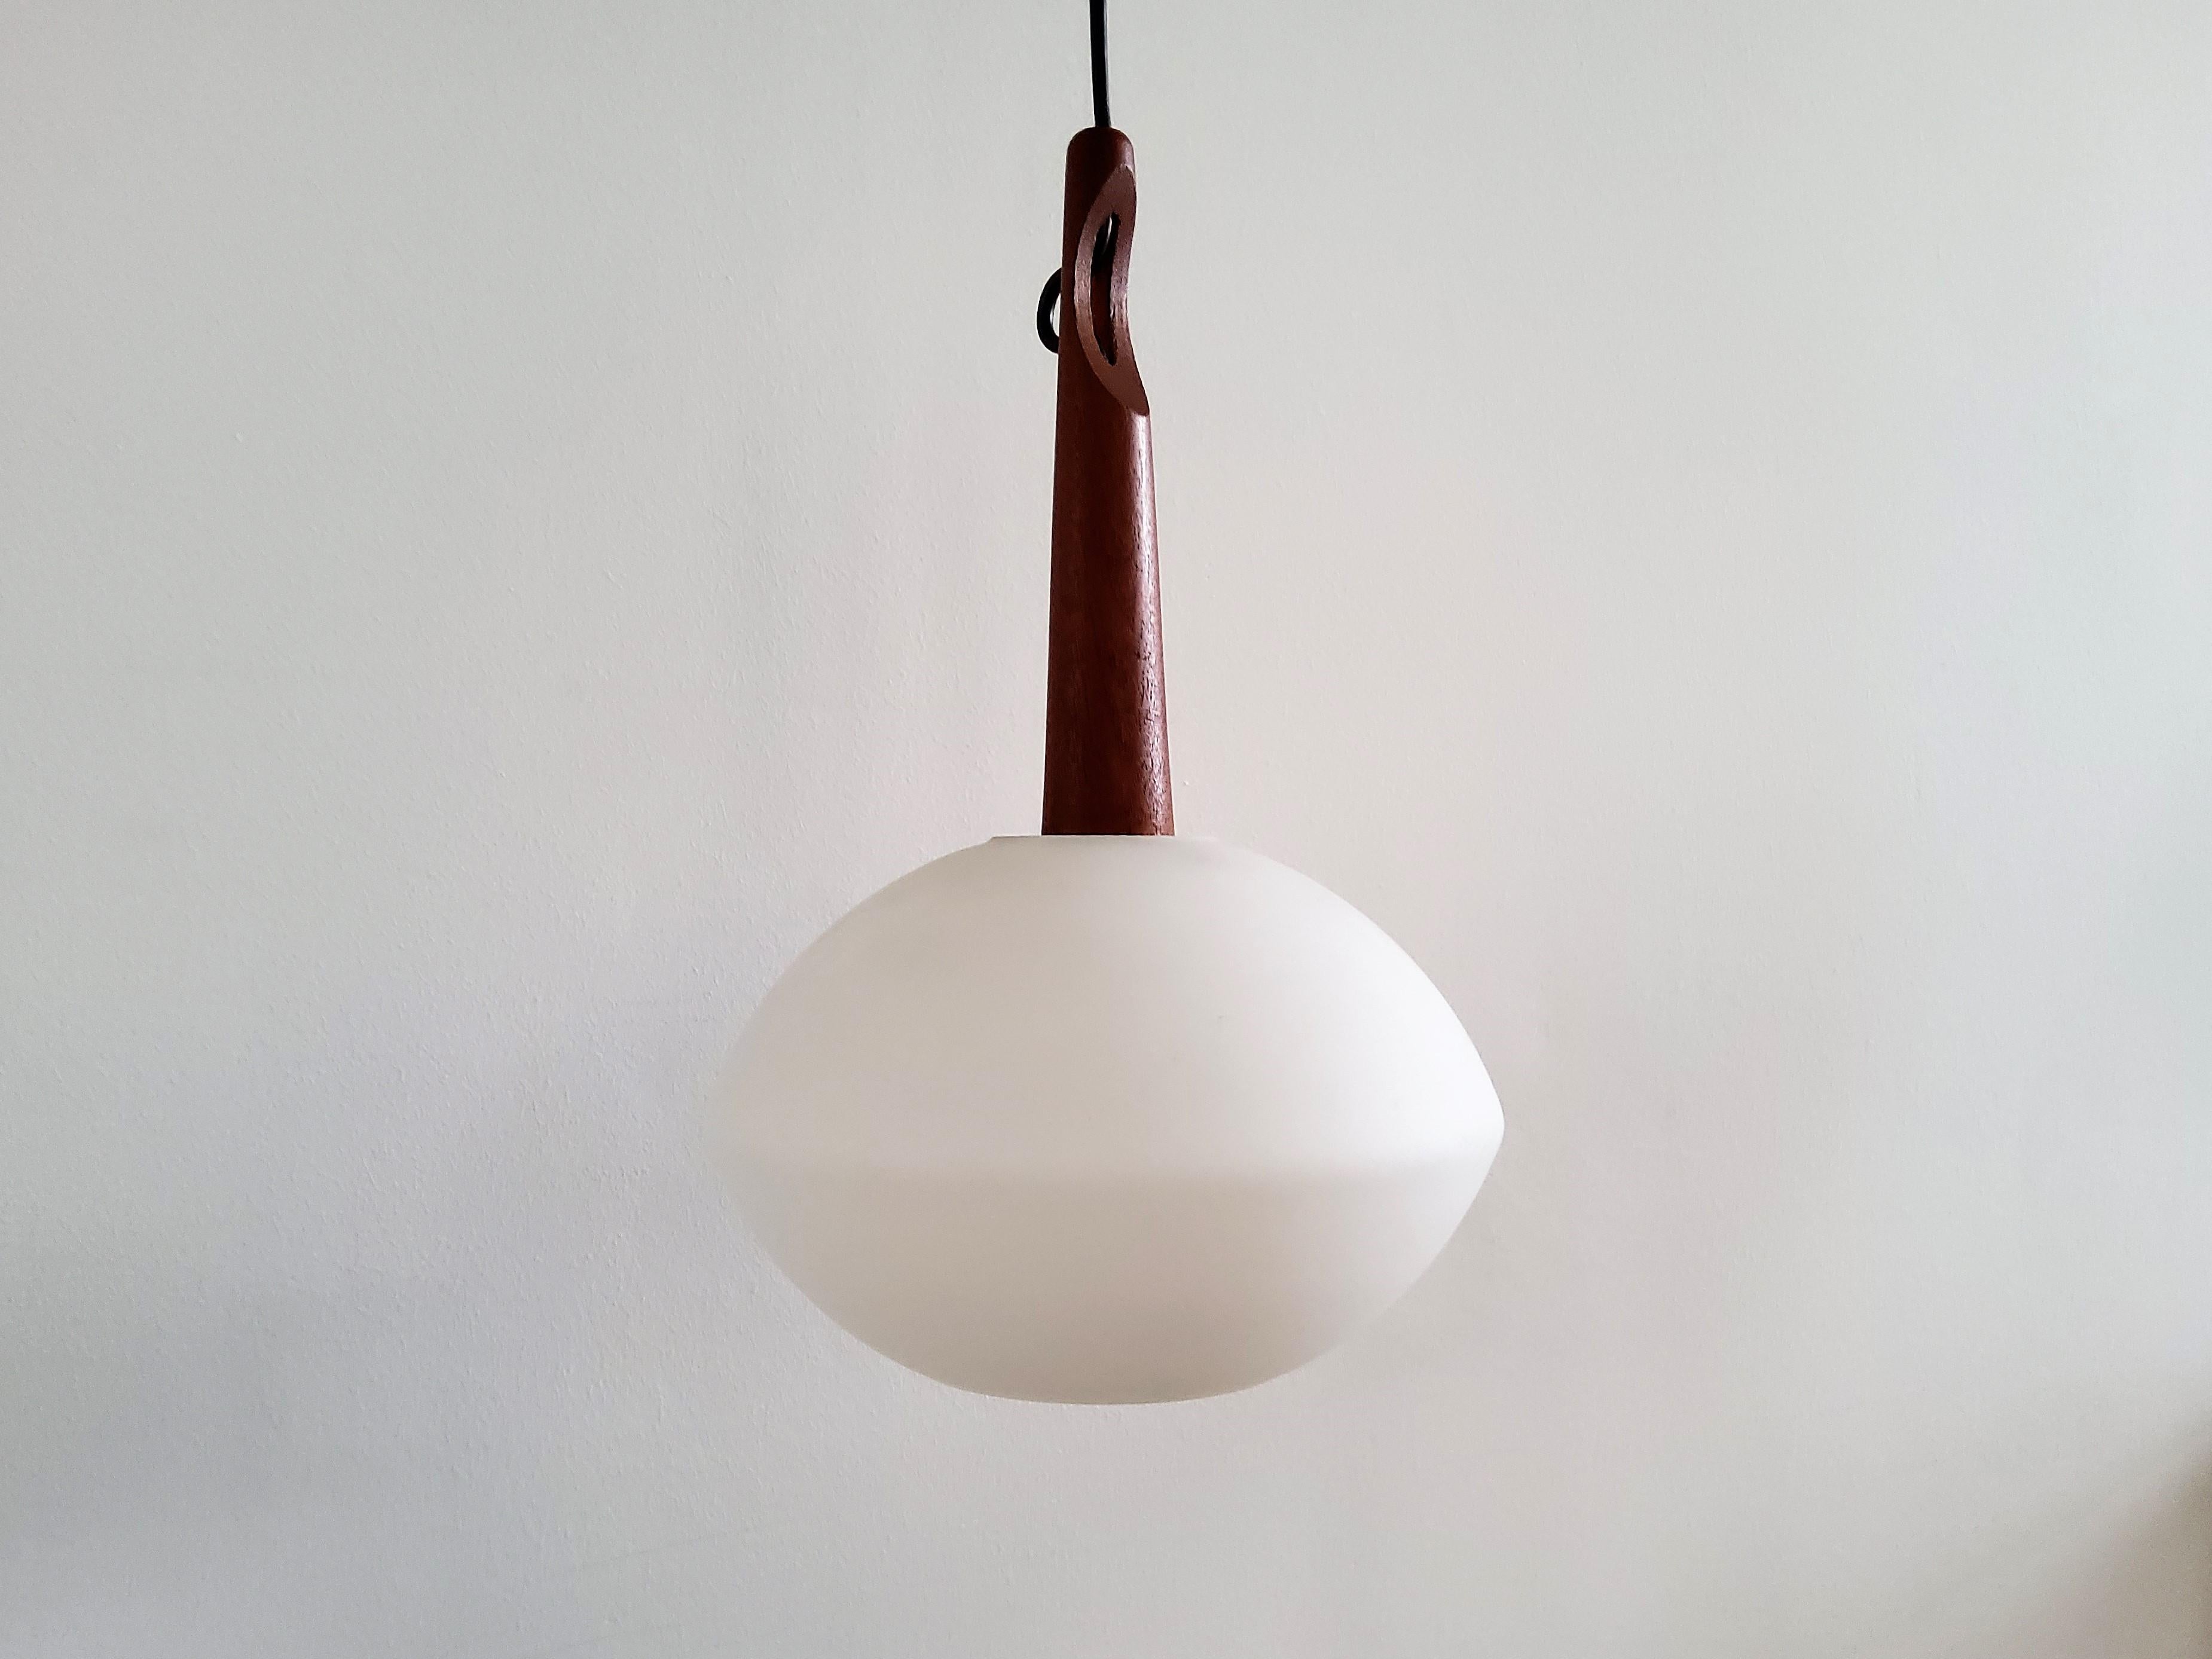 Cette lampe suspendue très élégante a été conçue par Uno et Östen Kristiansson pour Luxus en Suède dans les années 1950. Il est doté d'un abat-jour en verre opalin et d'une suspension en bois de teck. Il donne une belle lumière chaude lorsqu'il est